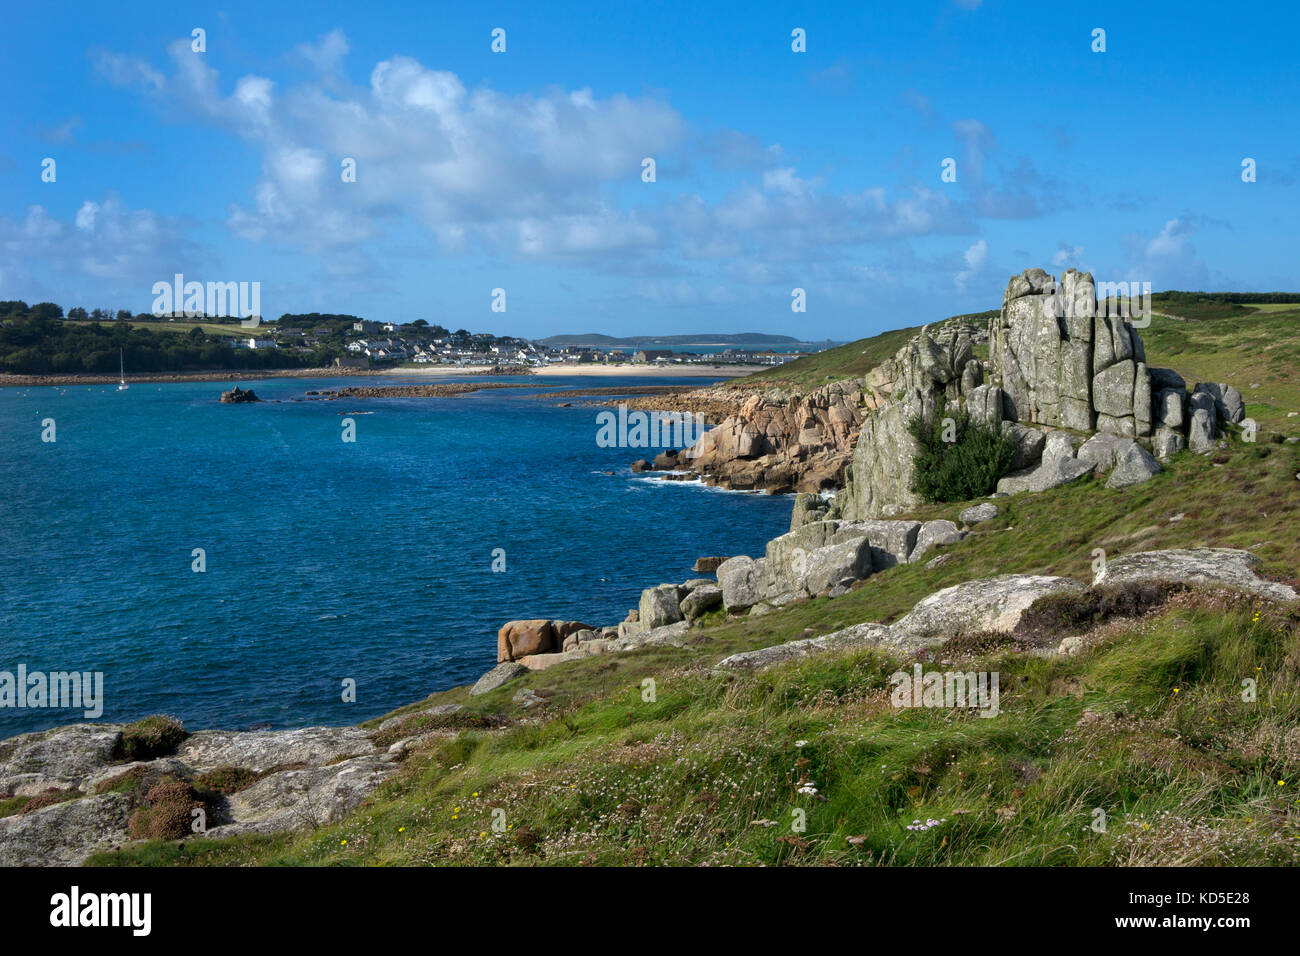 Blick entlang der Küste in Richtung Hugh Town, St. Mary's, Scilly Inseln, Britische Inseln Stockfoto